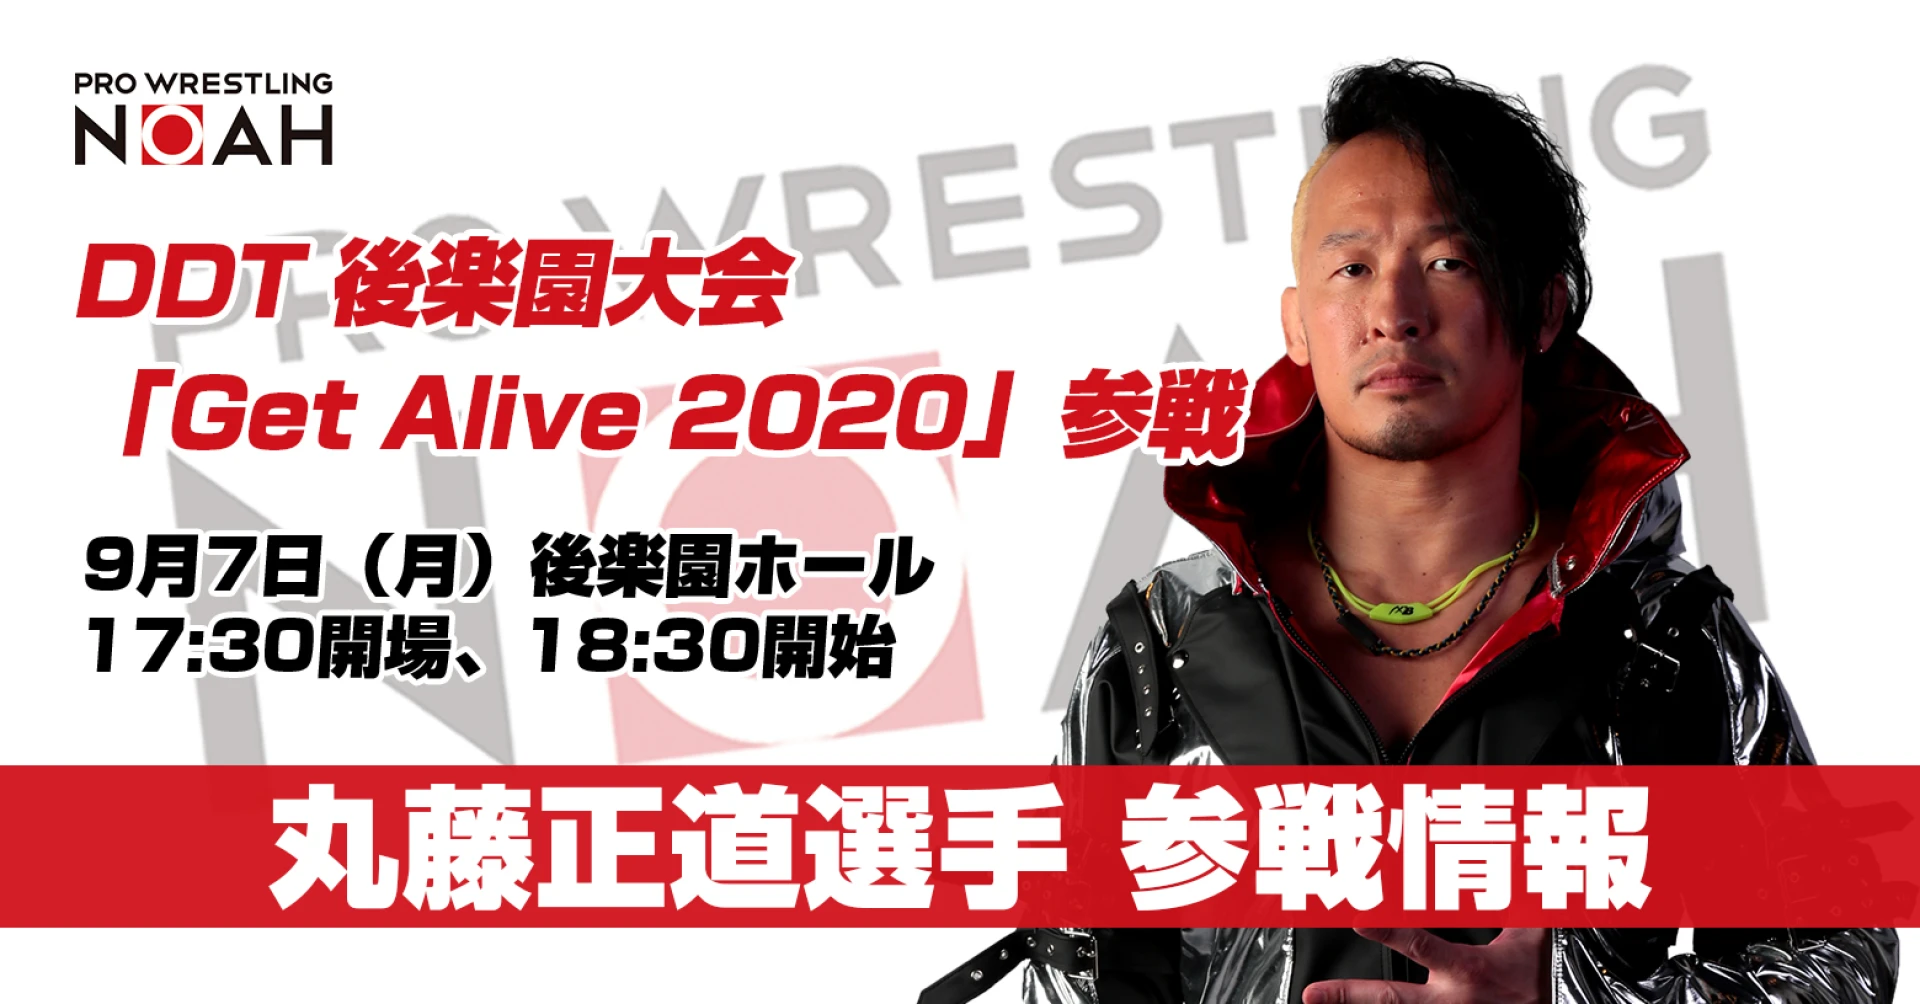 丸藤正道選手DDT参戦情報【9・7後楽園「Get Alive 2020」】